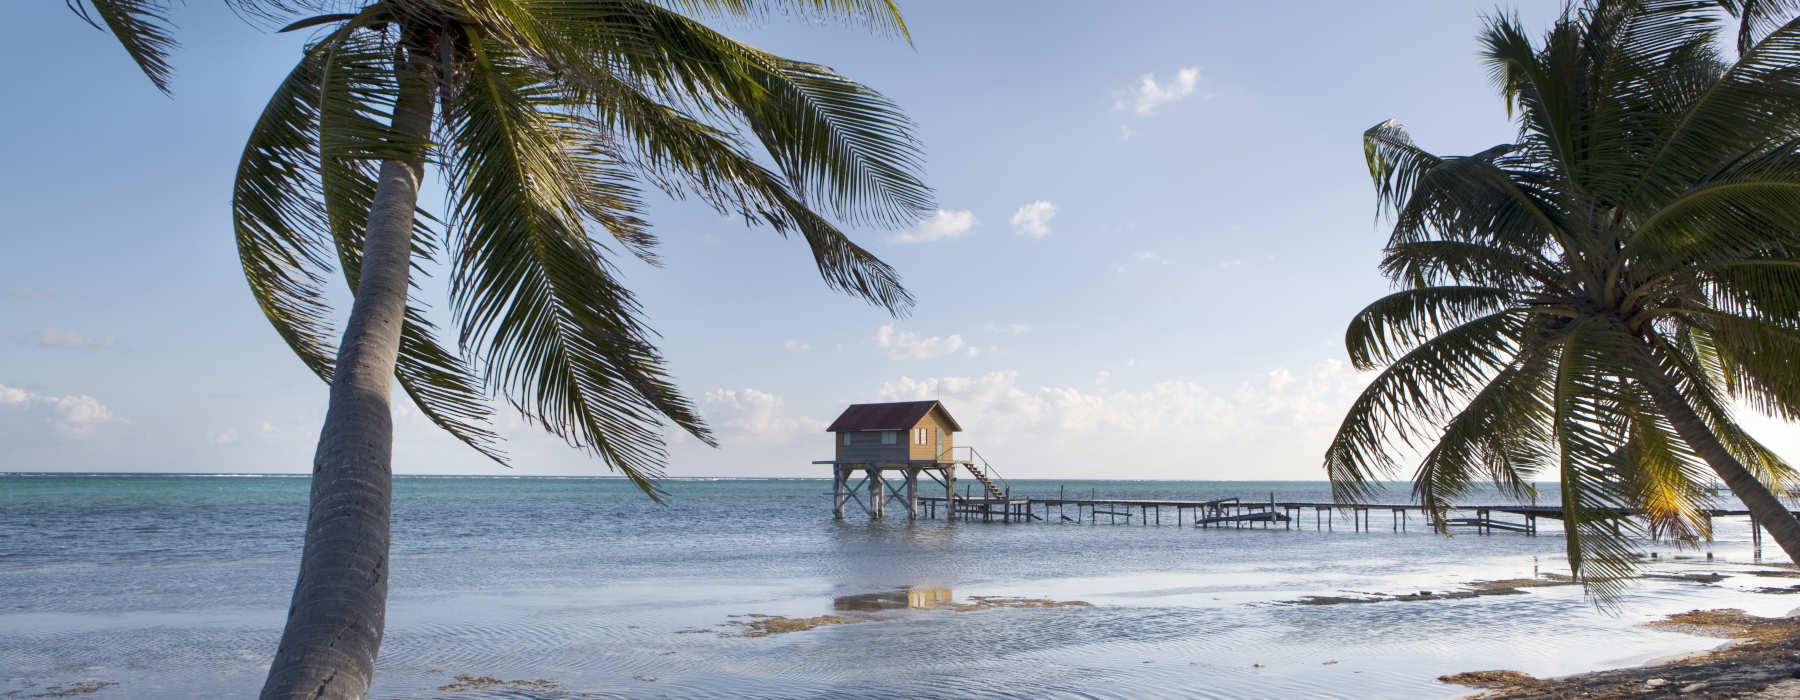 Belize<br class="hidden-md hidden-lg" /> Diving Holidays